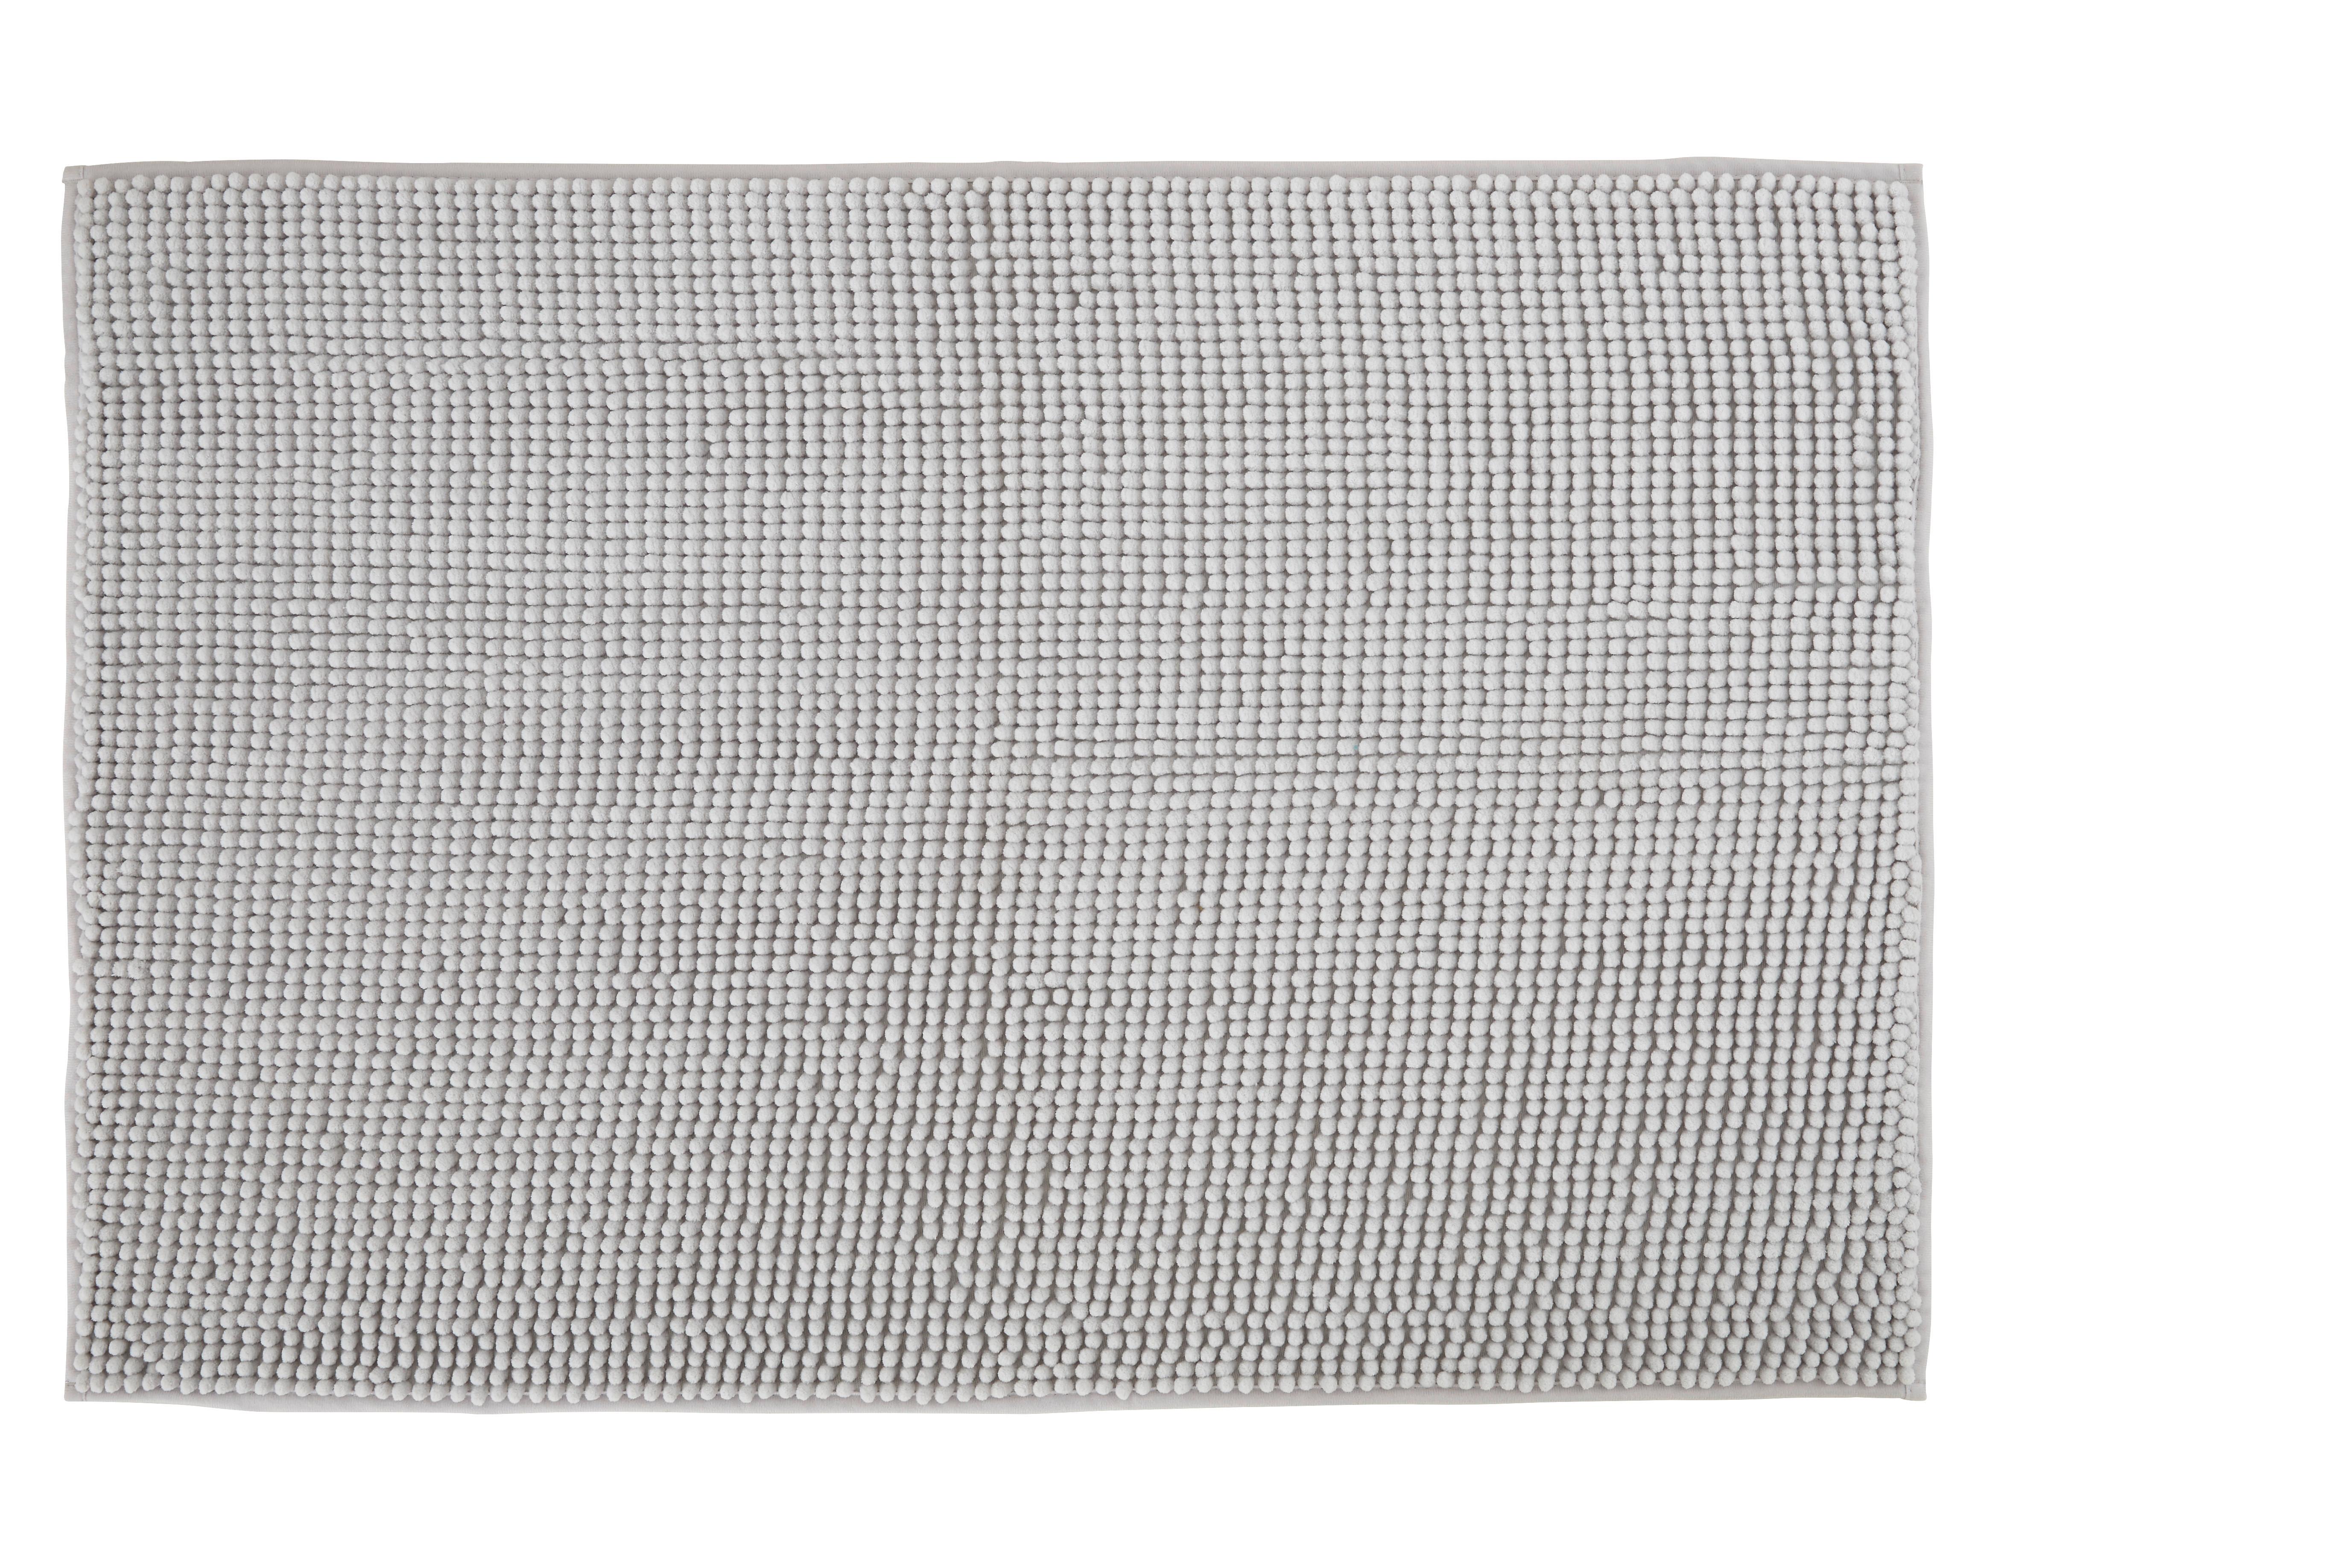 Badematte Nelly in Silber ca. 60x90cm - Silberfarben, Textil (60/90cm) - Modern Living